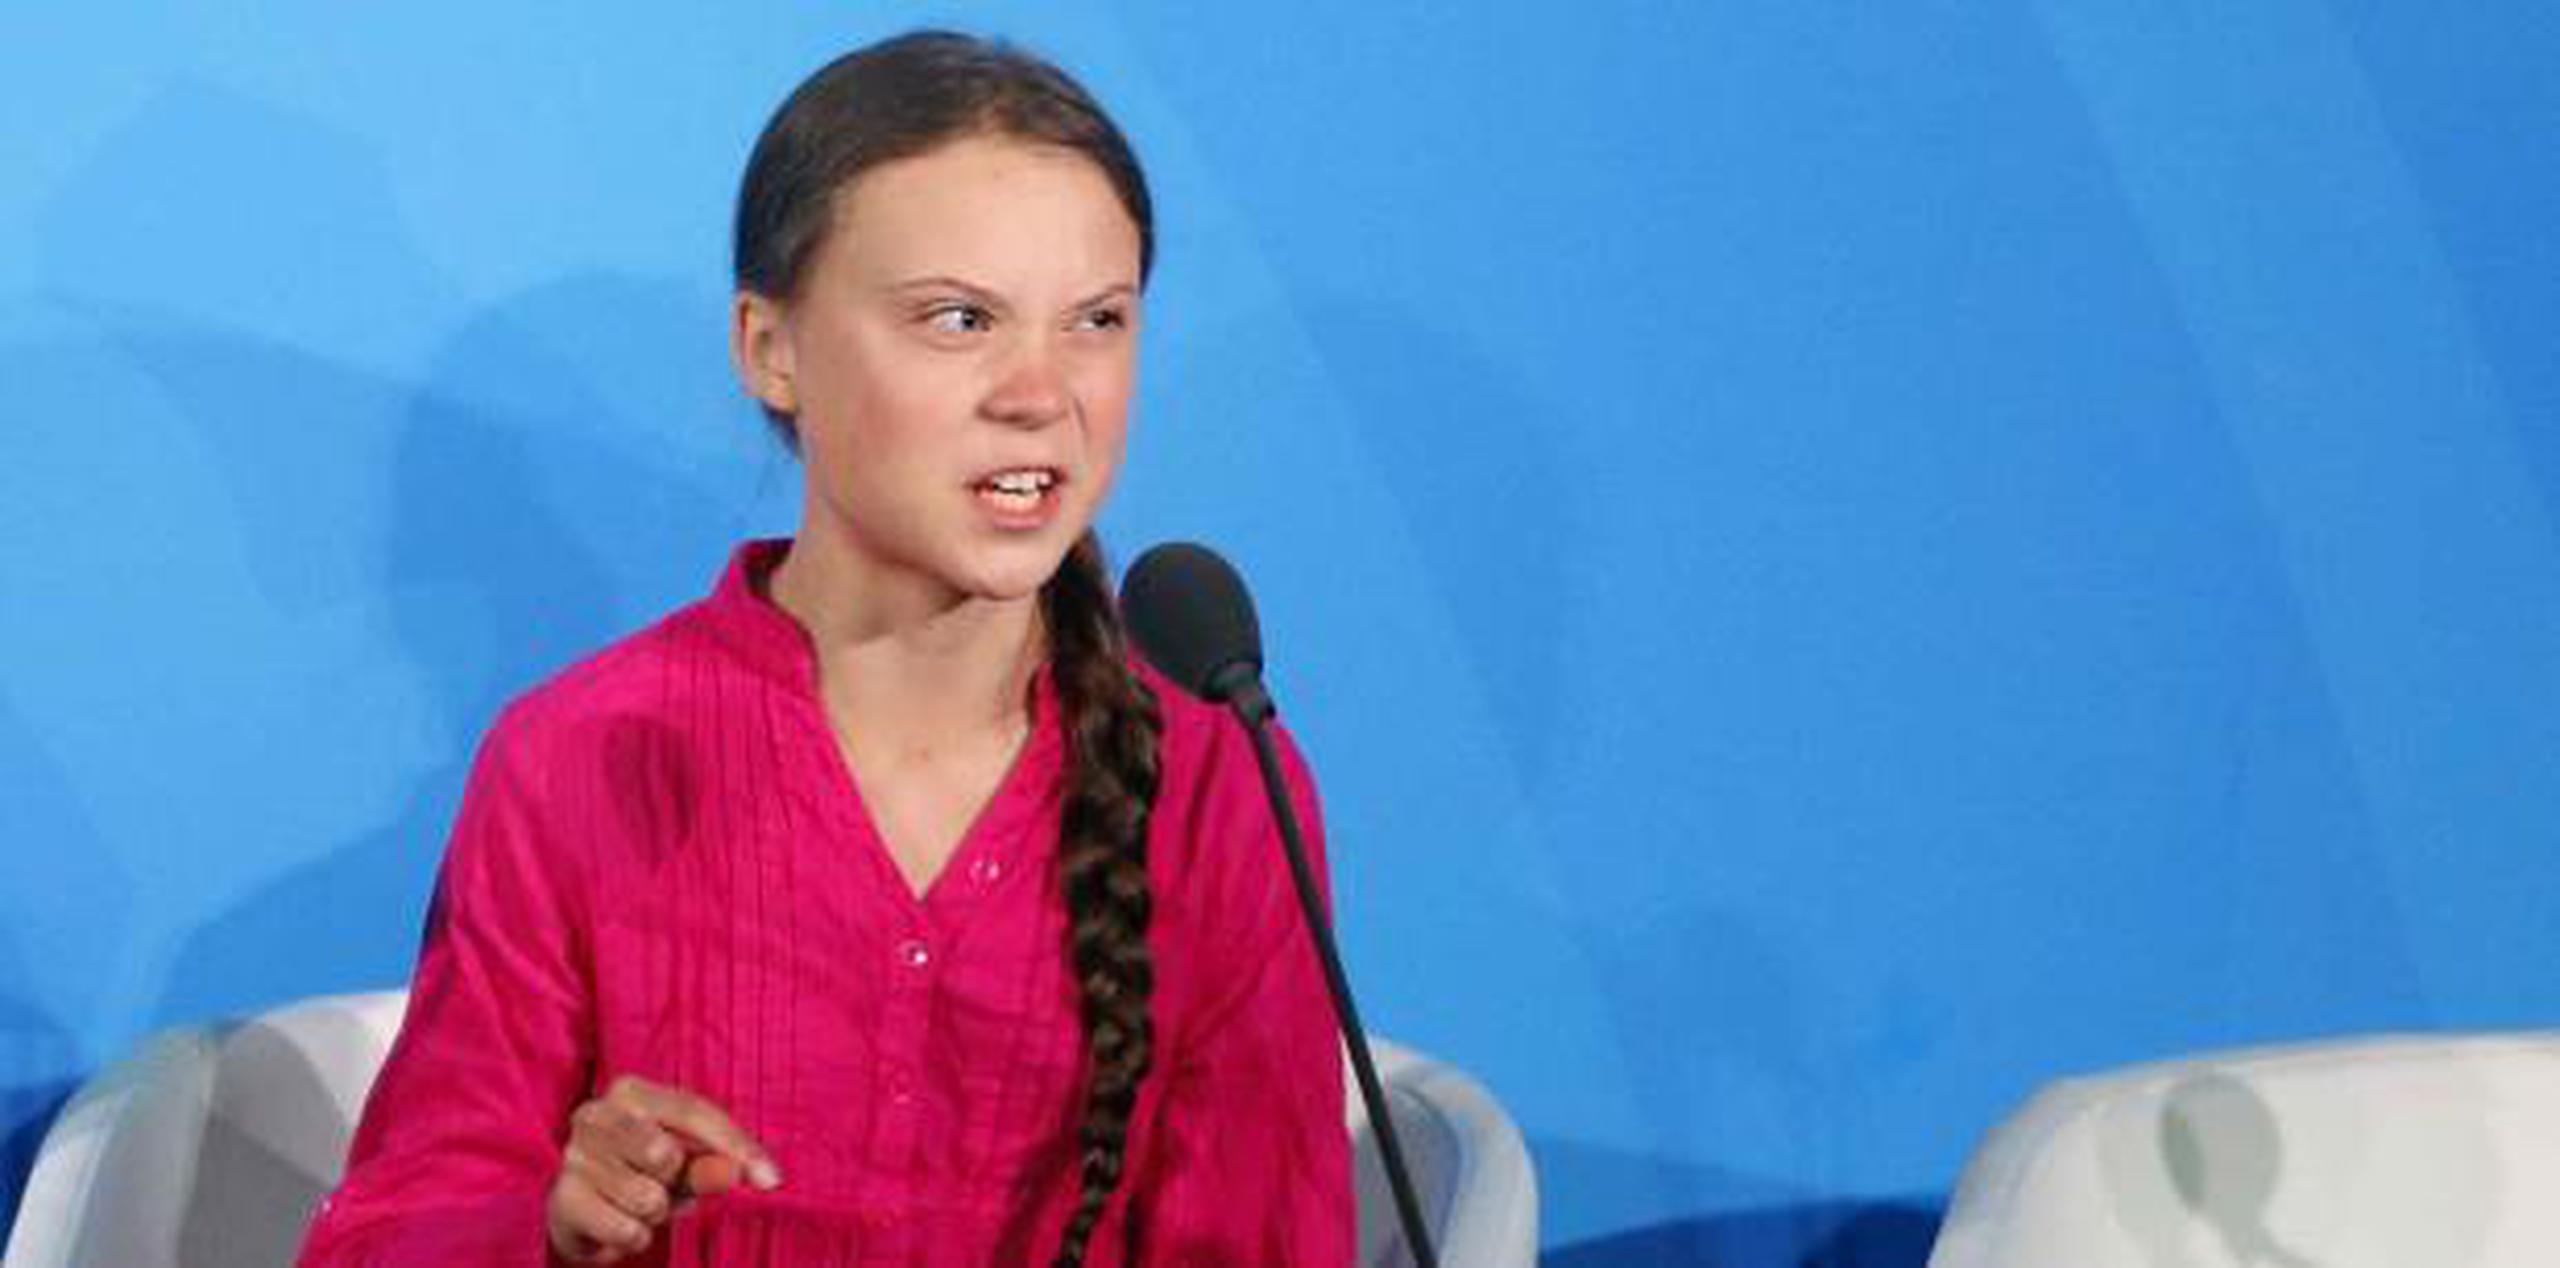 "Me han robado mis sueños, mi infancia con sus palabras vacías", aseguró Greta Thunberg antes de agregar que "sin embargo, tengo suerte, porqueson muchos los que sufren, los que están muriendo" por culpa del calentamiento global. (AP)

